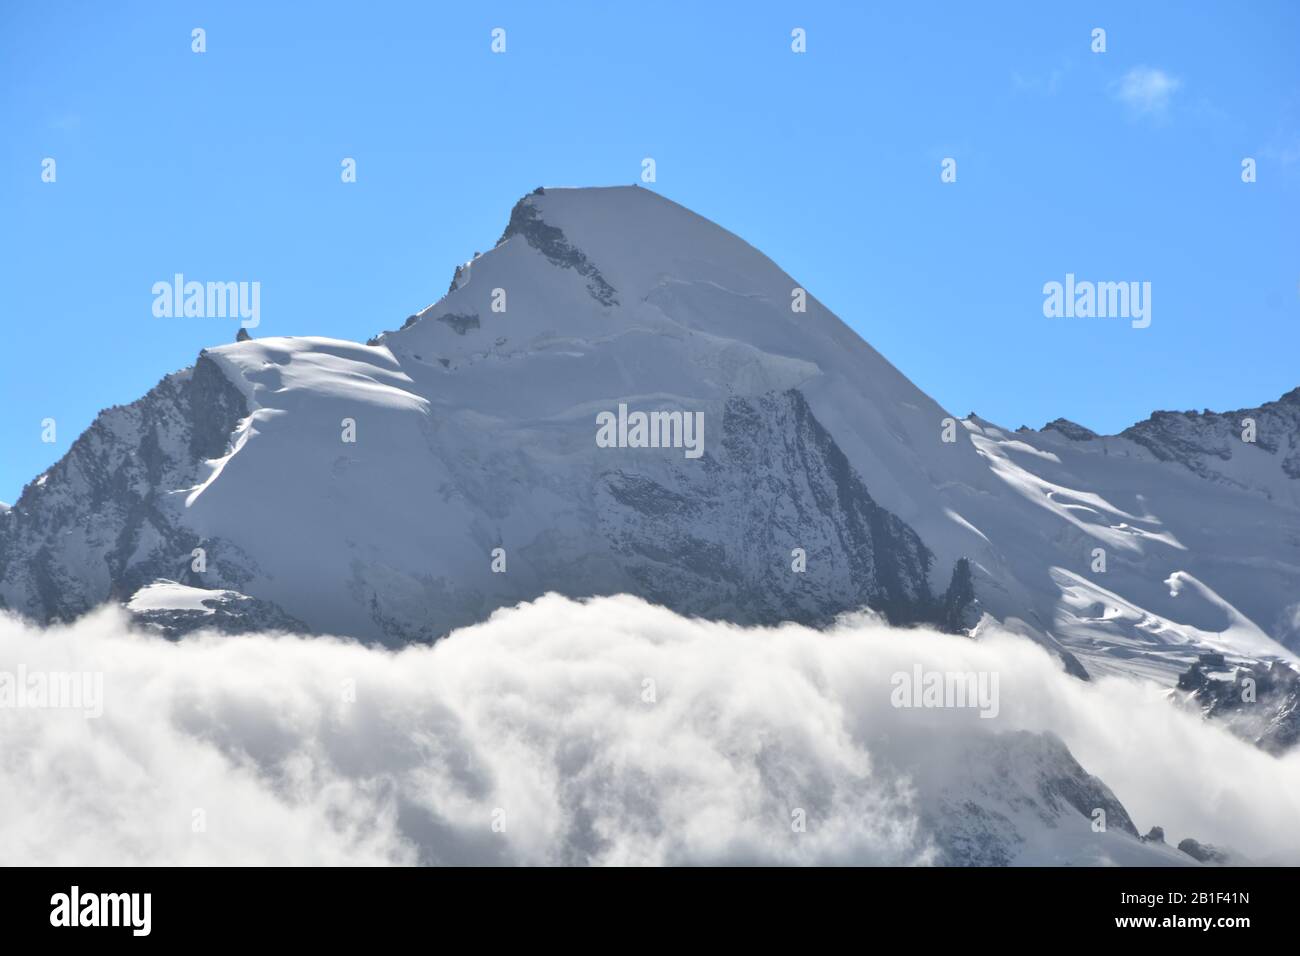 La cima dell'Allalinhorn si erge sopra le nuvole, a destra il ristorante girevole del ghiacciaio di Mittel Allalin sopra Saas Fee nell'alp svizzero Foto Stock